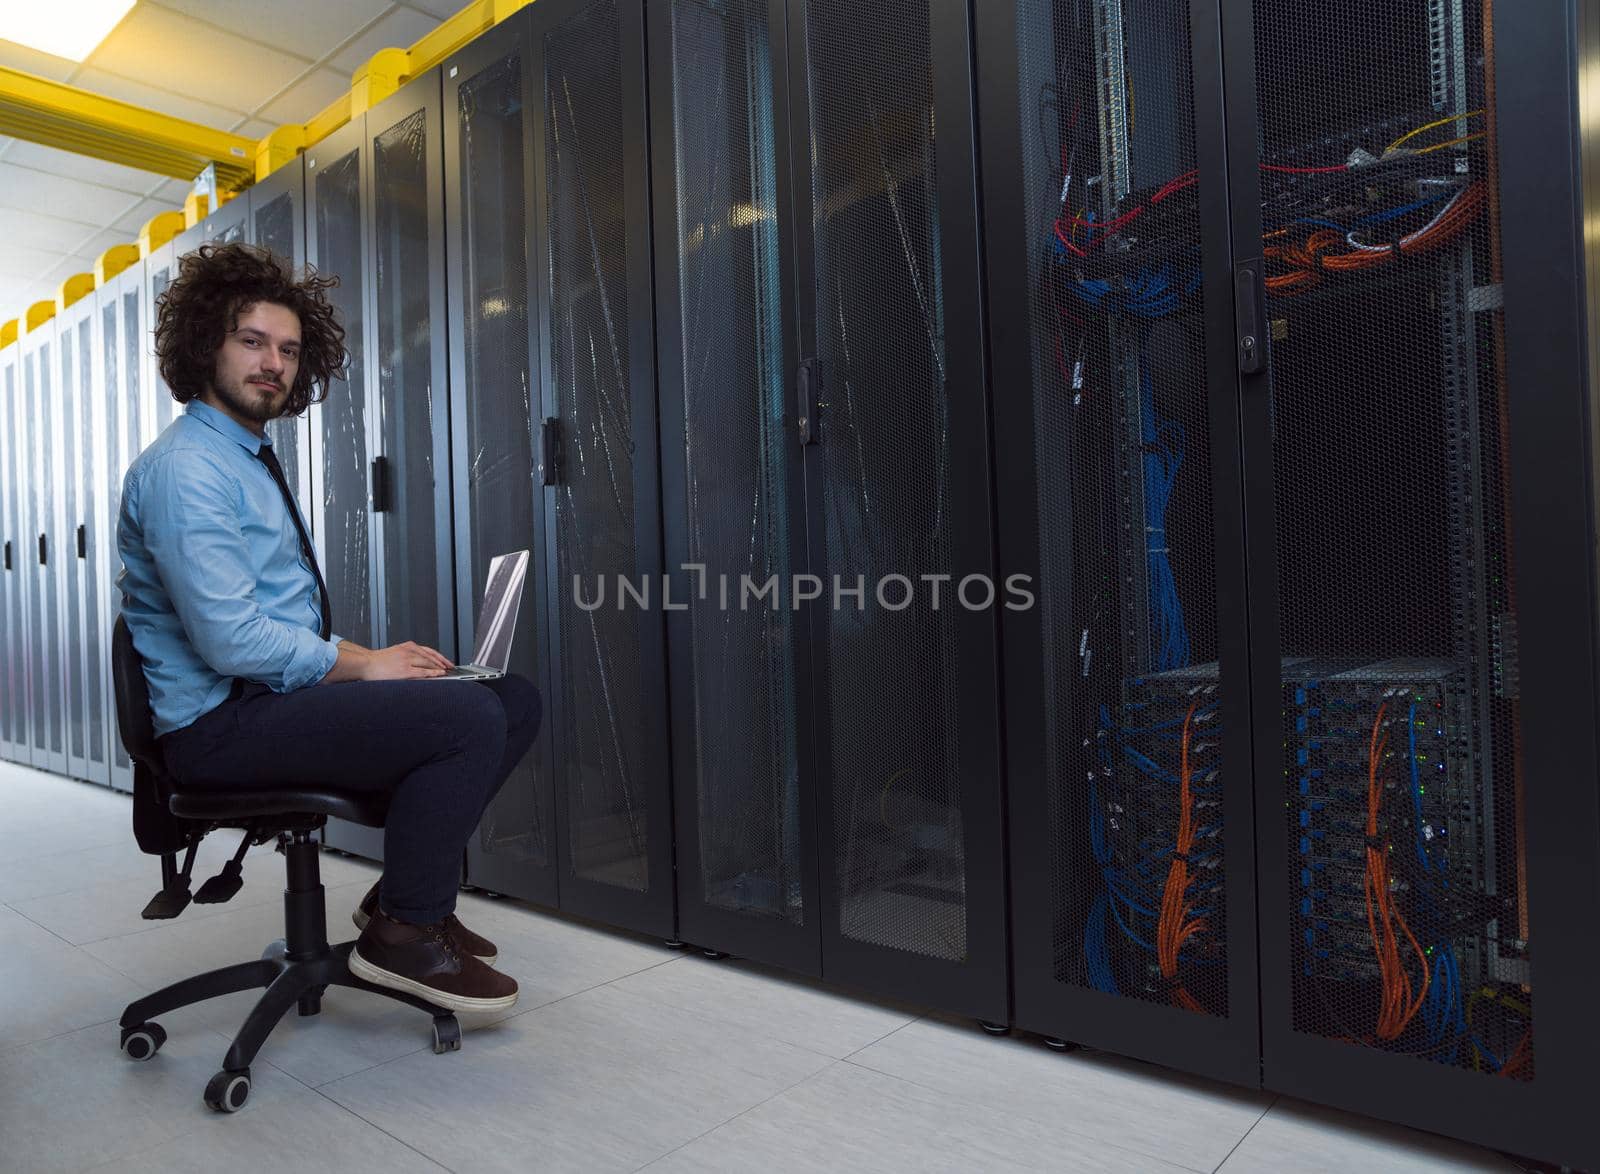 engineer working on a laptop in server room by dotshock